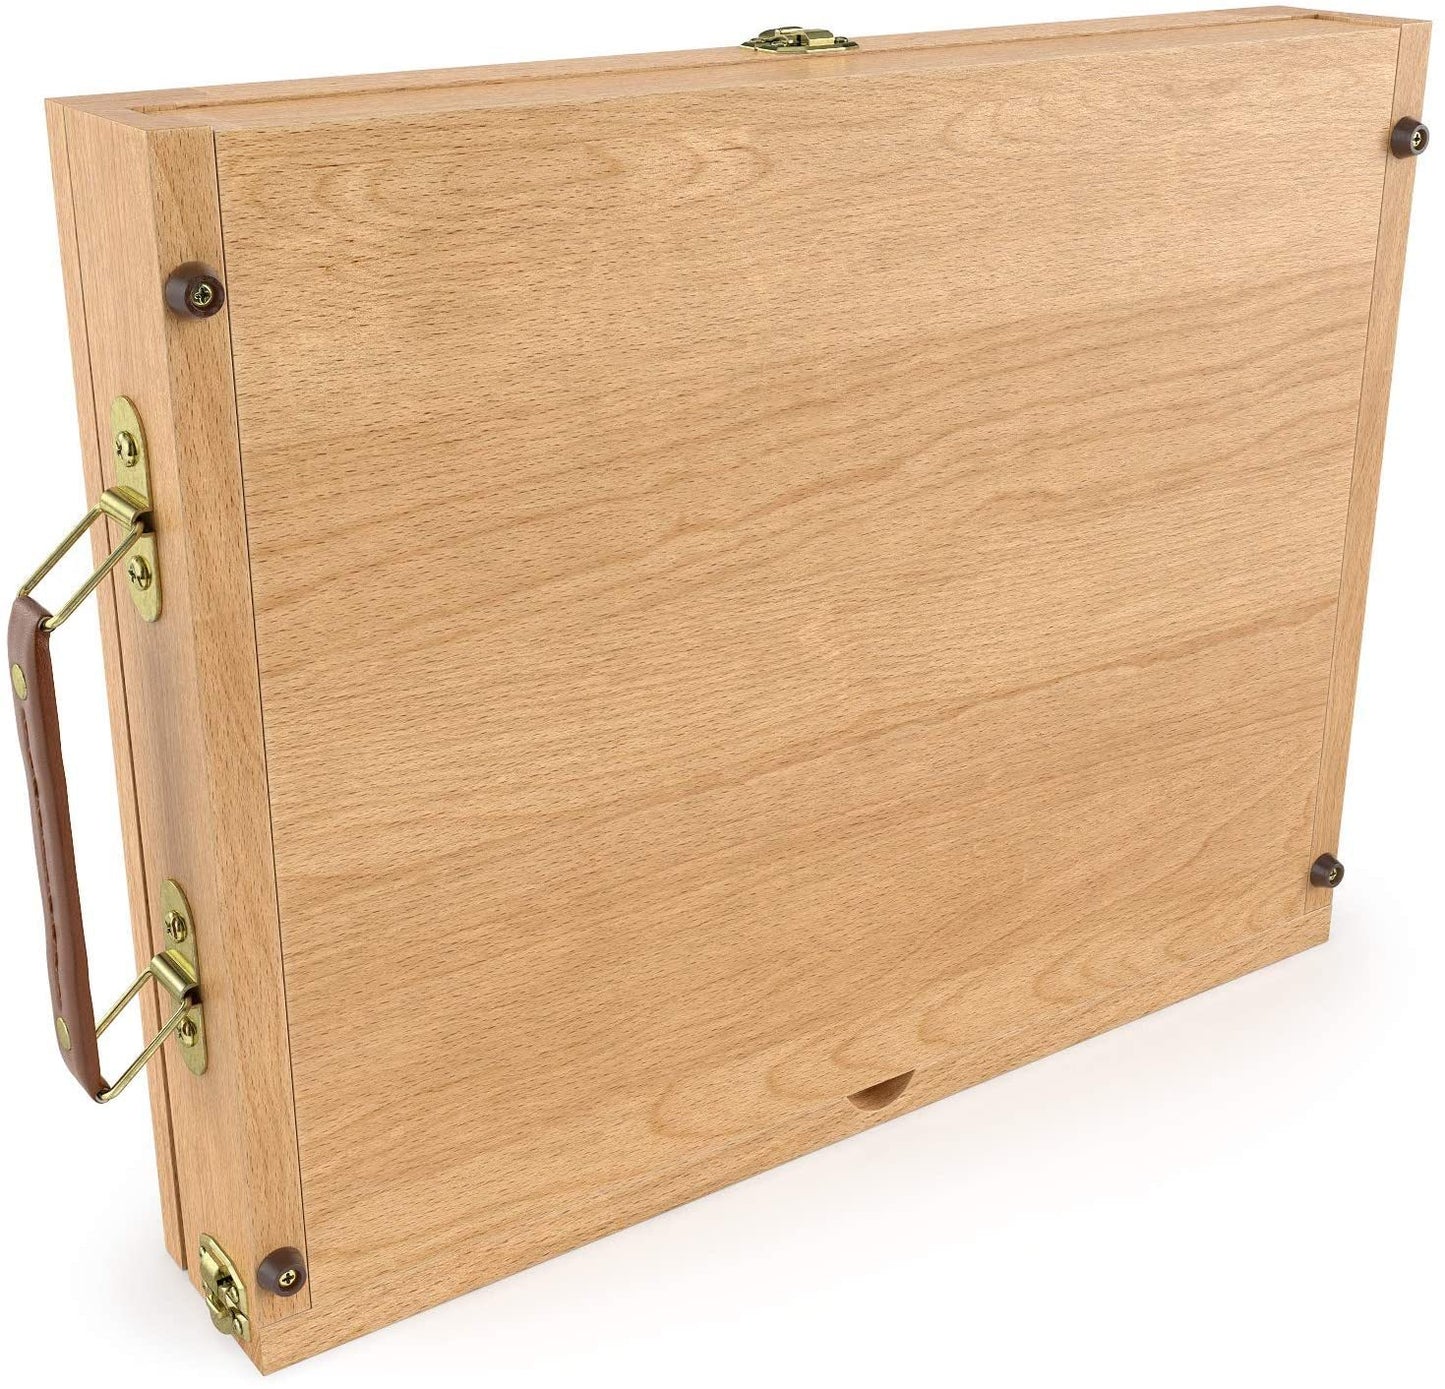 Wood Desktop Easel with Storage Drawer & Palette